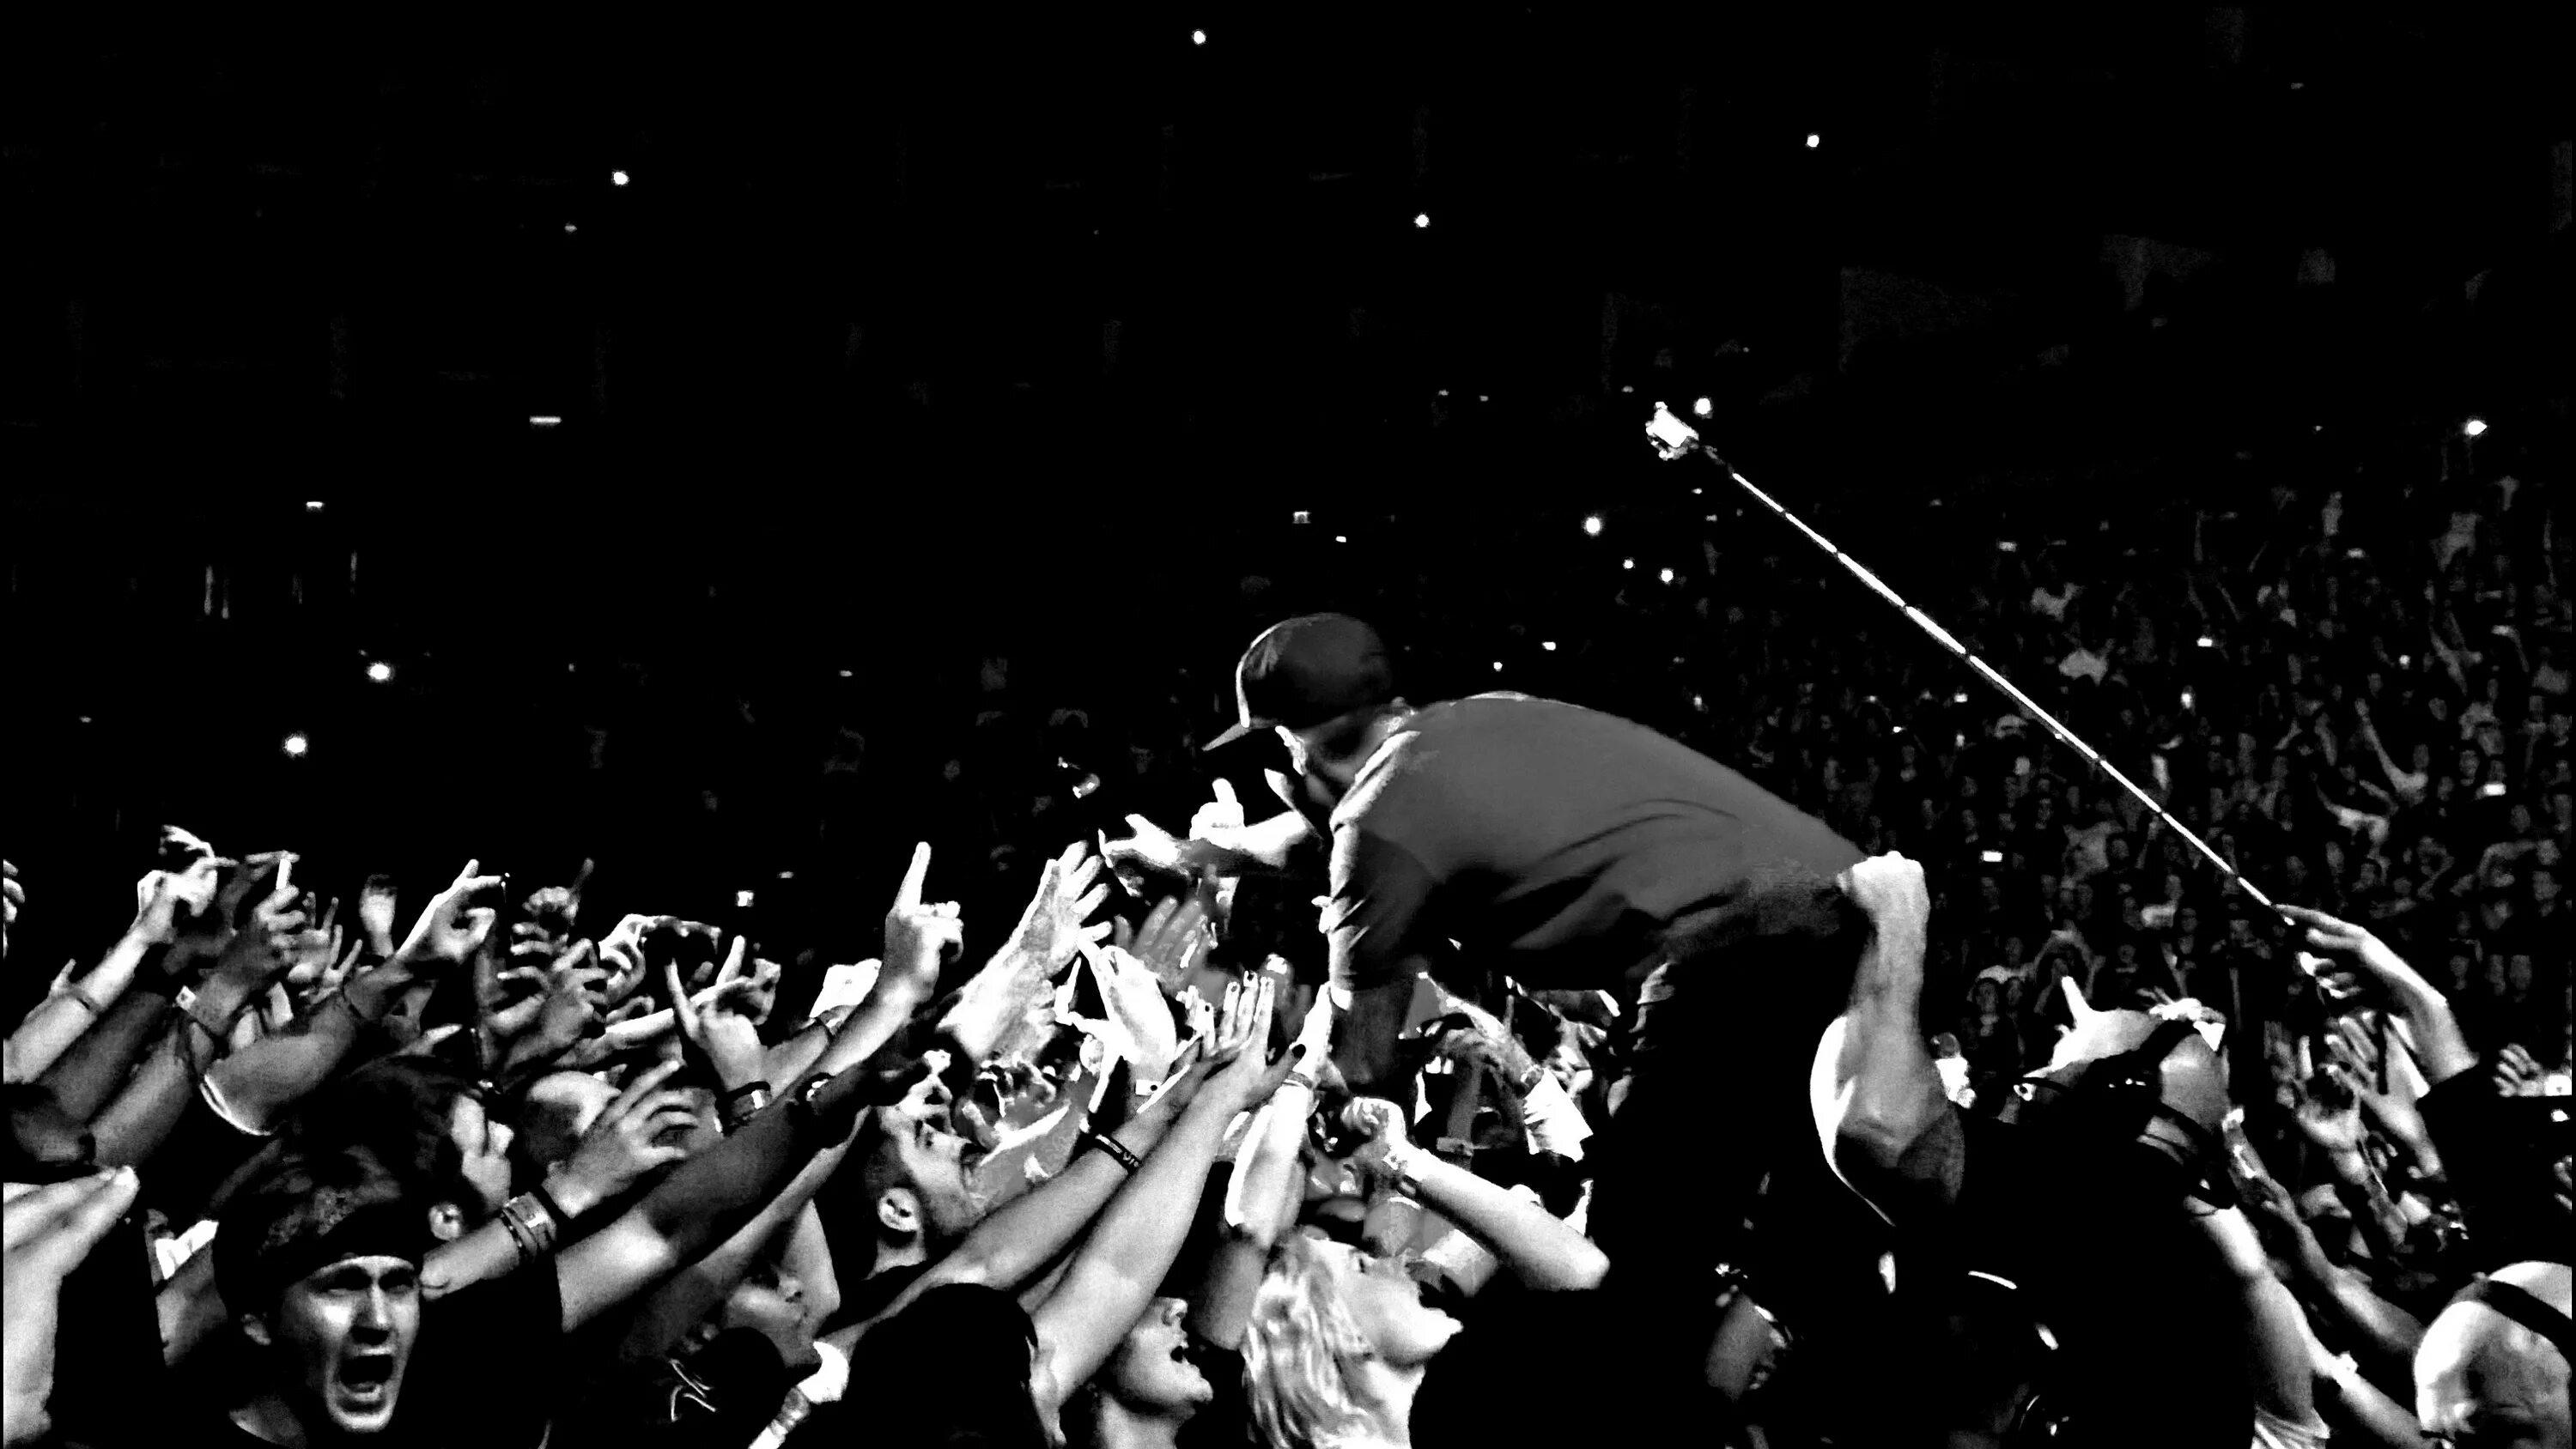 Линкин парк. СКК 2012 Linkin Park. Концерт черно белый. Линкин парк фото с последнего концерта. Linkin park в исполнении оркестра